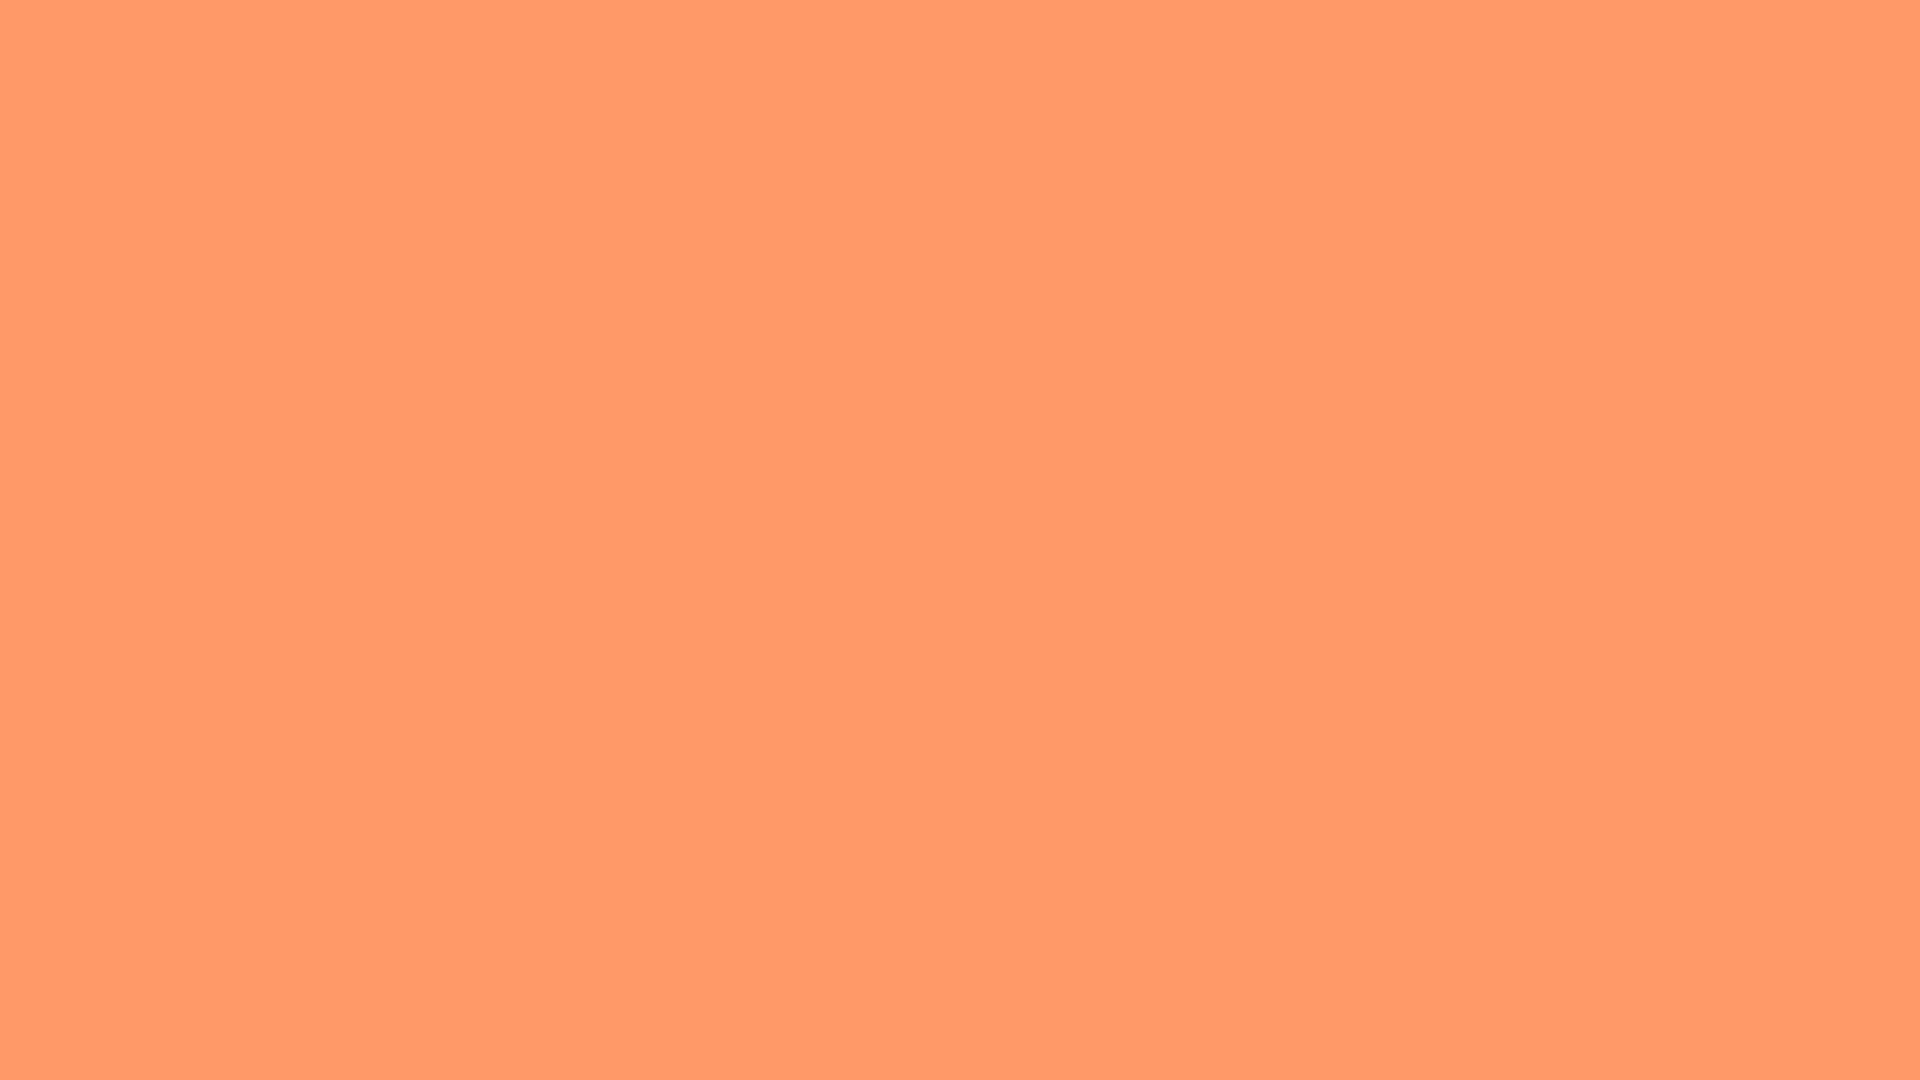 Unavista De Fondo Del Cielo Soleado Y Vibrante De La Mañana Sobre El Horizonte Con Un Toque De Color Naranja Claro. Fondo de pantalla